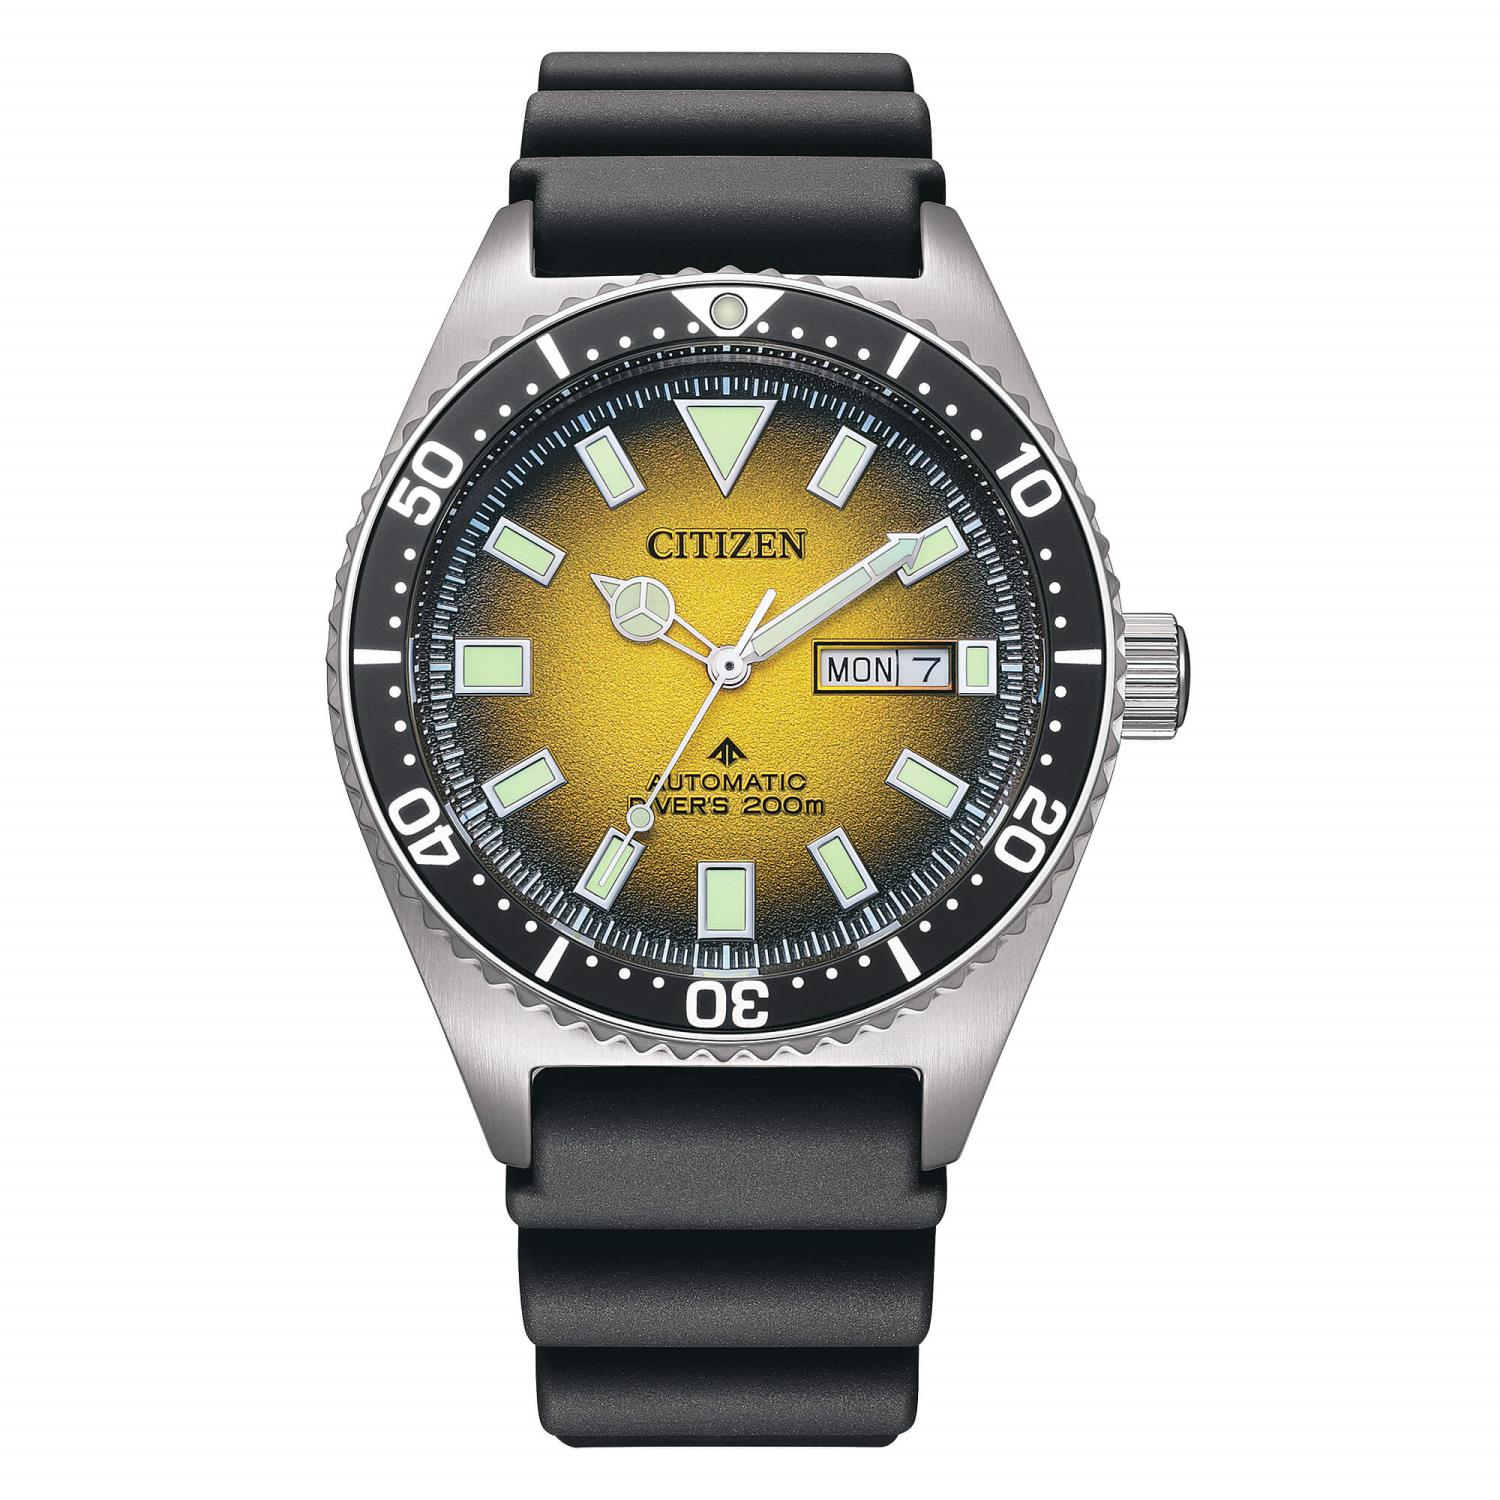 Orologio Citizen Promaster Diver's Automatic 200 mt. Ref. NY0120-01X - CITIZEN